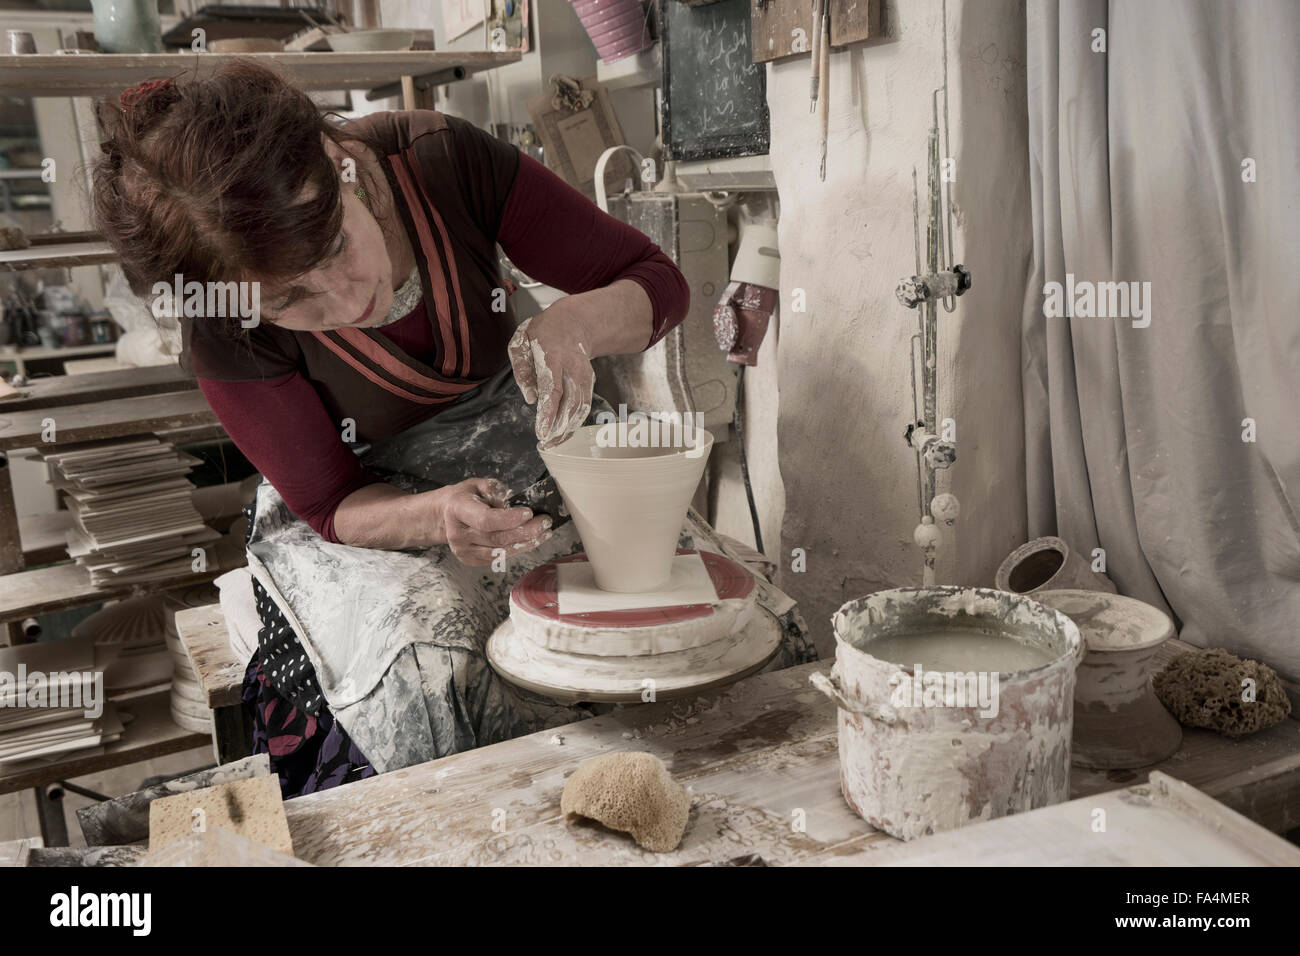 Weibliche Potter Formen Ton in Werkstatt, Bayern, Deutschland  Stockfotografie - Alamy